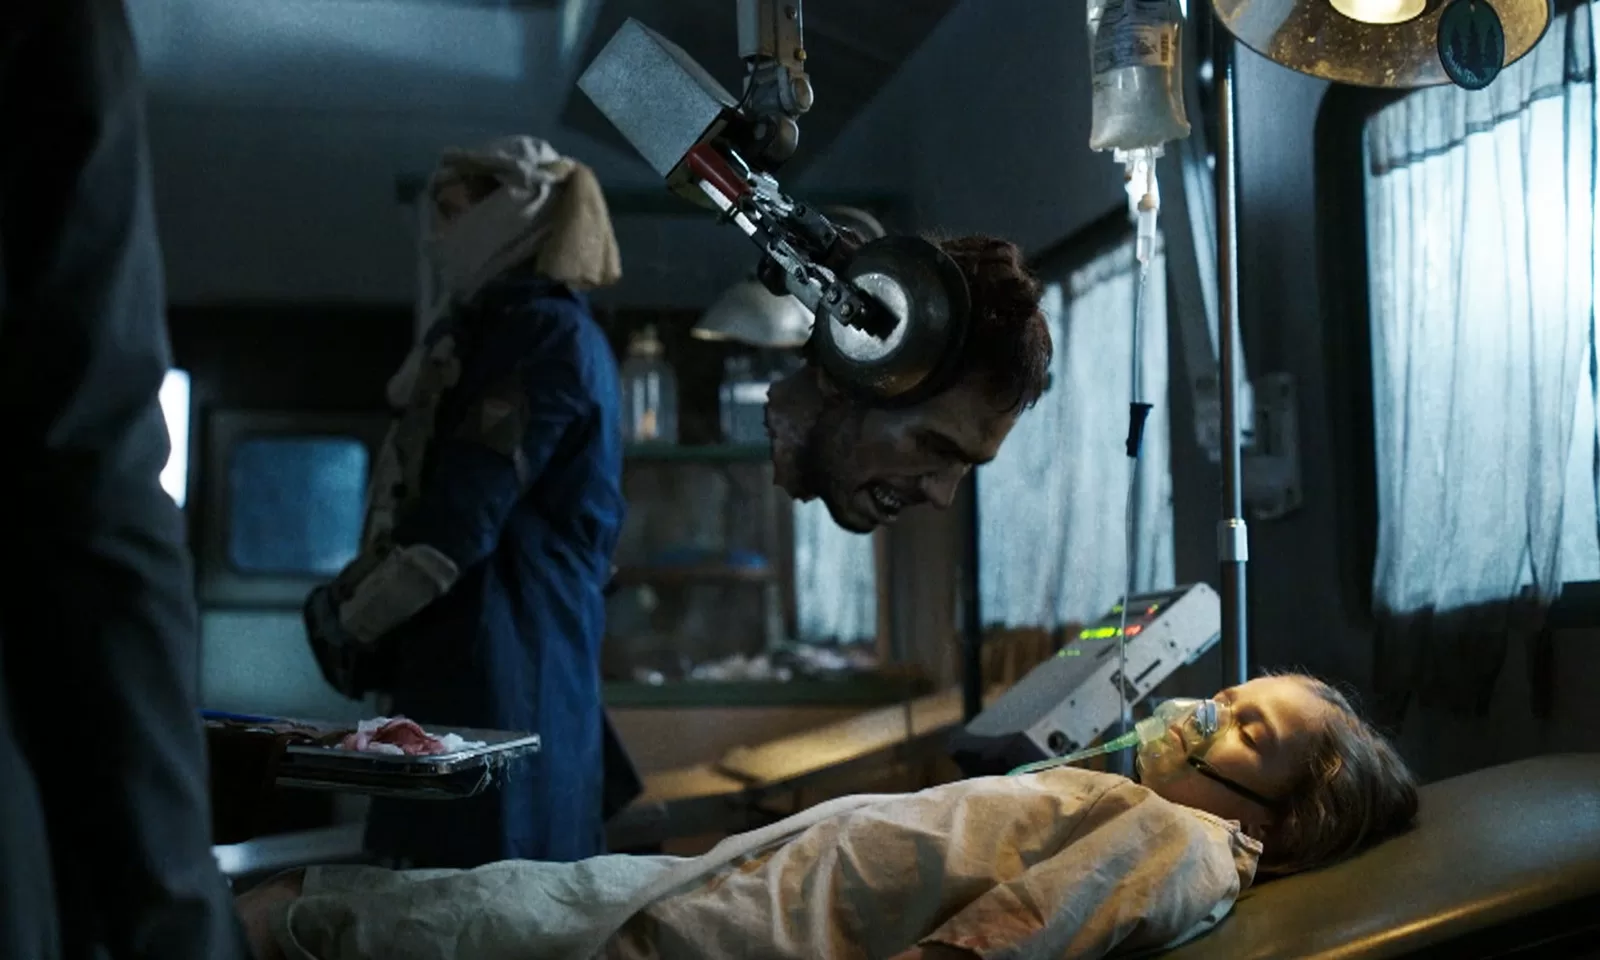 Finch, filho de Dwight e Serry, deitado na cama do vagão do trem e com um zumbi prestes a morde-lo em cena do episódio 2 da 8ª temporada de Fear the Walking Dead.